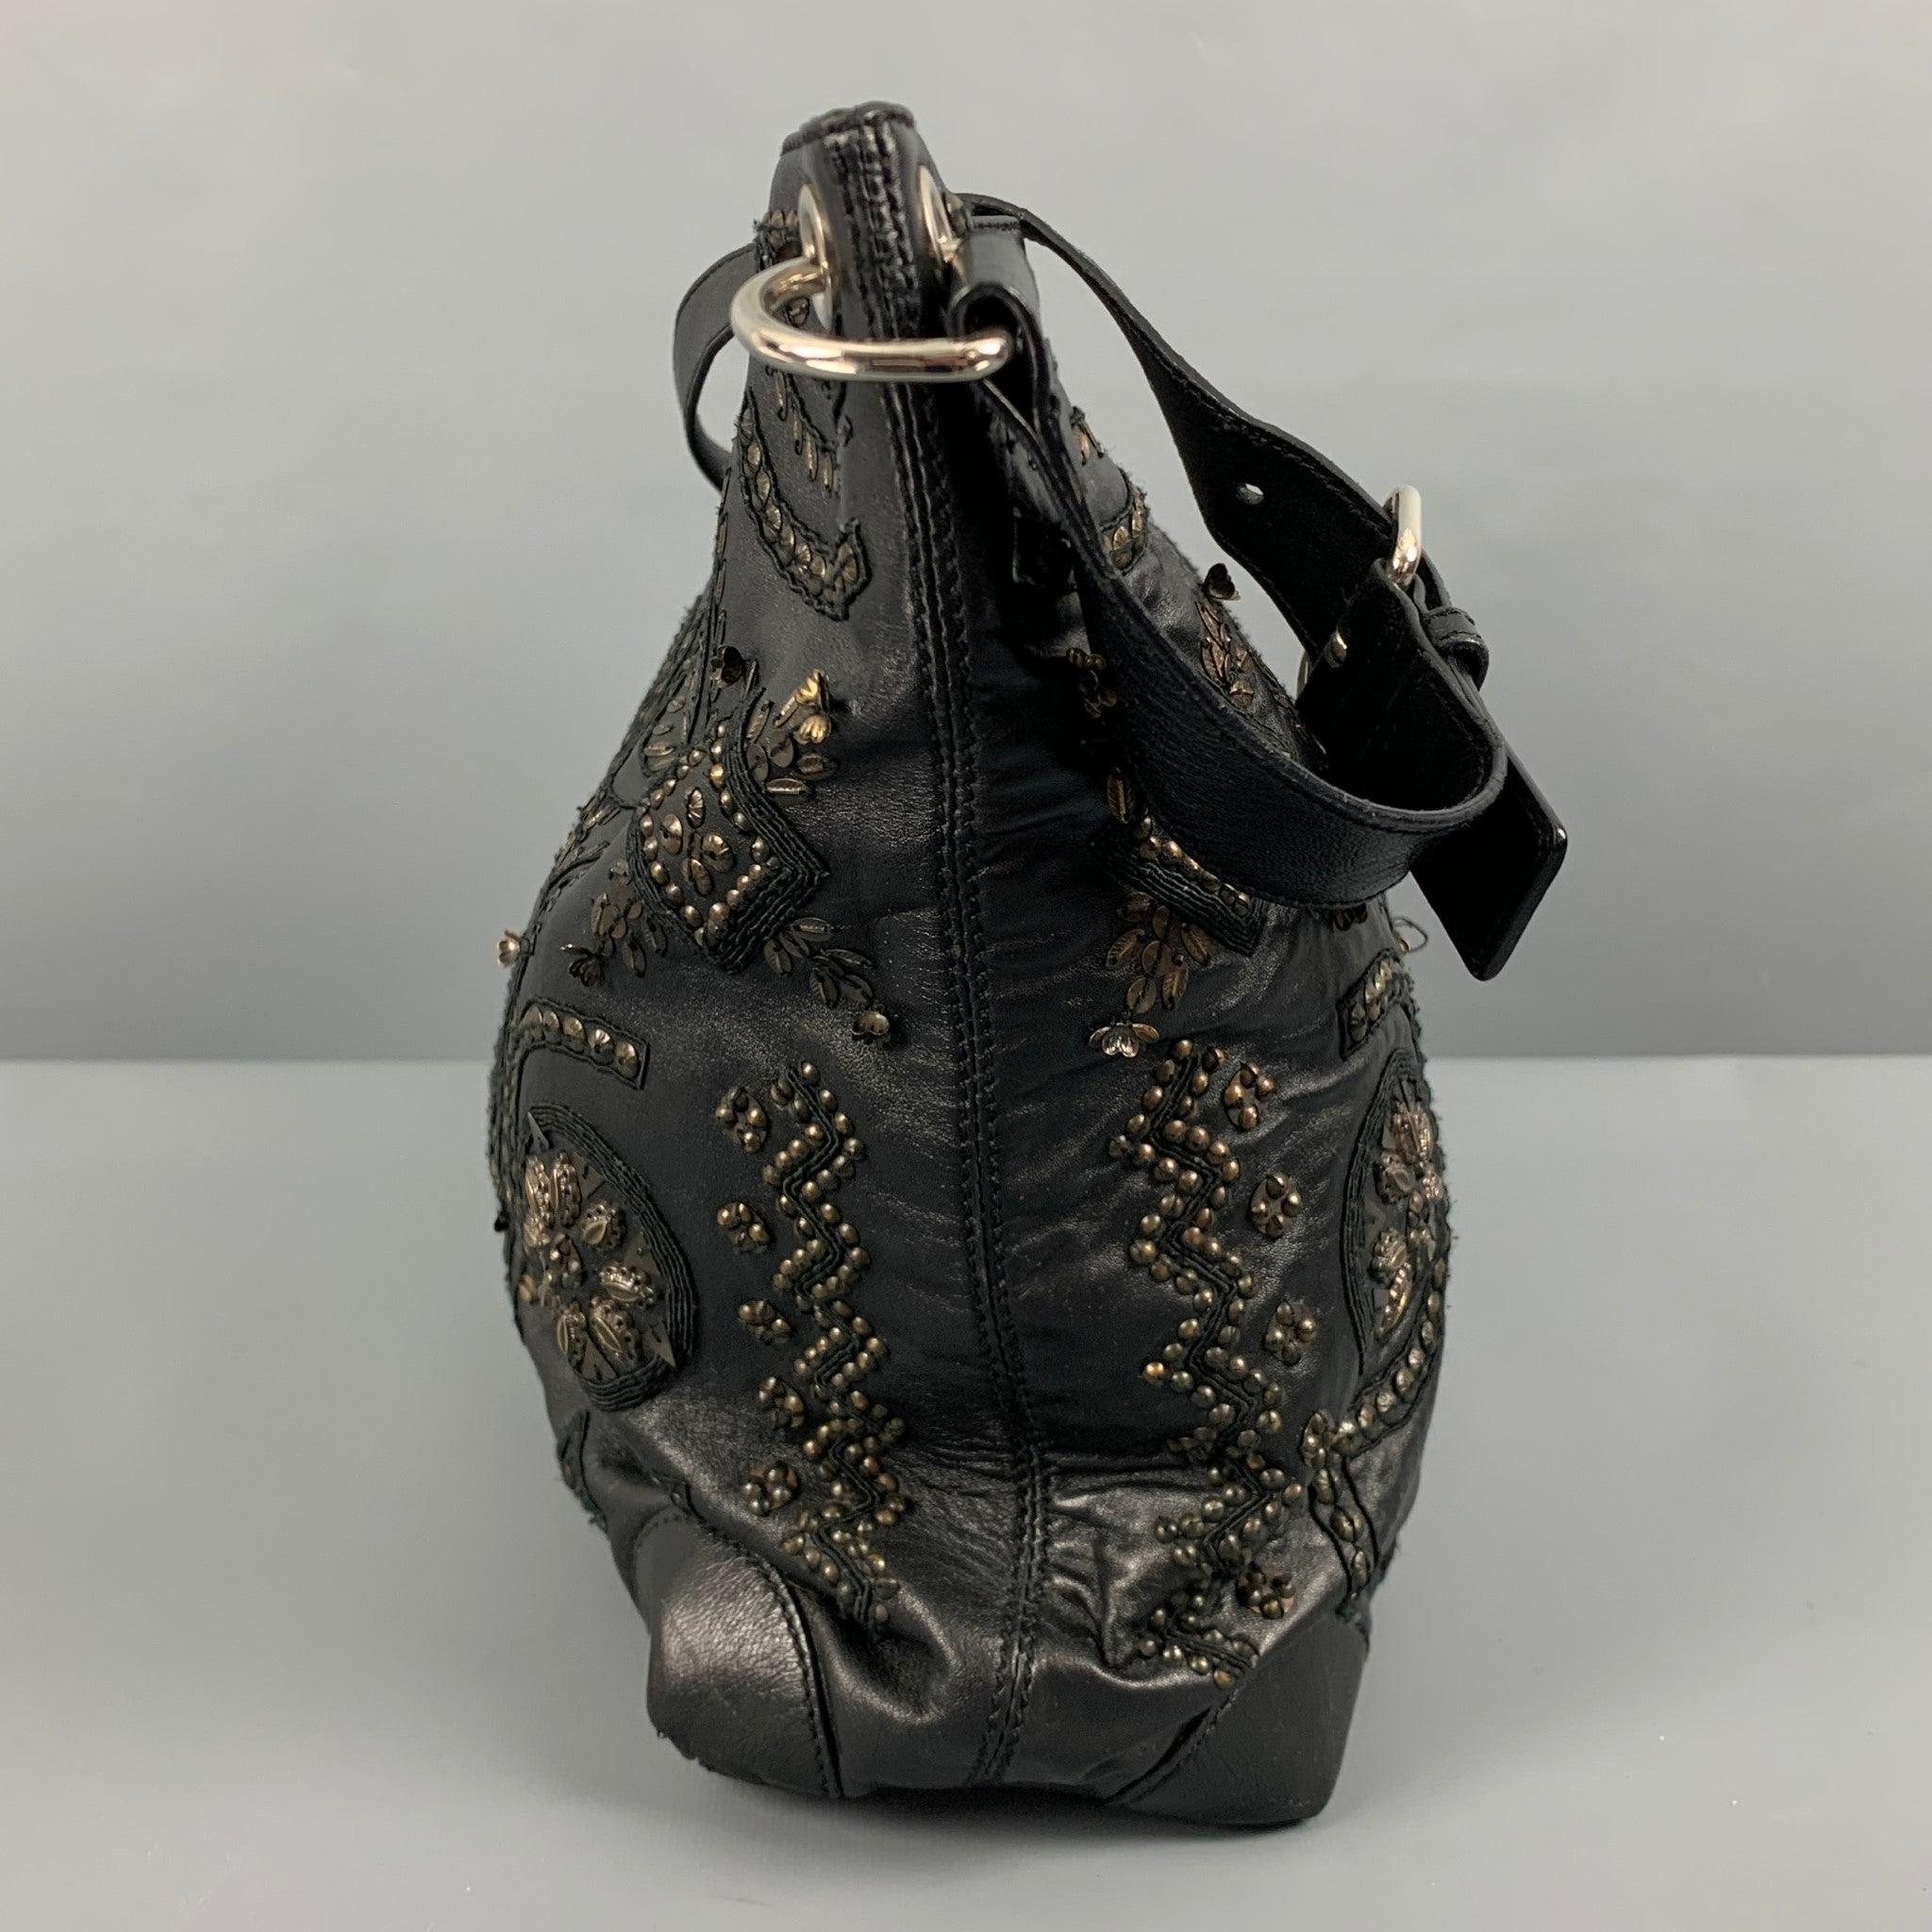 OSCAR DE A RENTA Handtasche
aus schwarzem Leder mit goldfarbenen Nieten und Perlen, floralem Muster, verstellbarem Schulterriemen und geräumigem Innenraum. Sehr guter, gebrauchter Zustand.
Einige fehlende Perlen. 

Abmessungen: 
  Länge: 17 Zoll